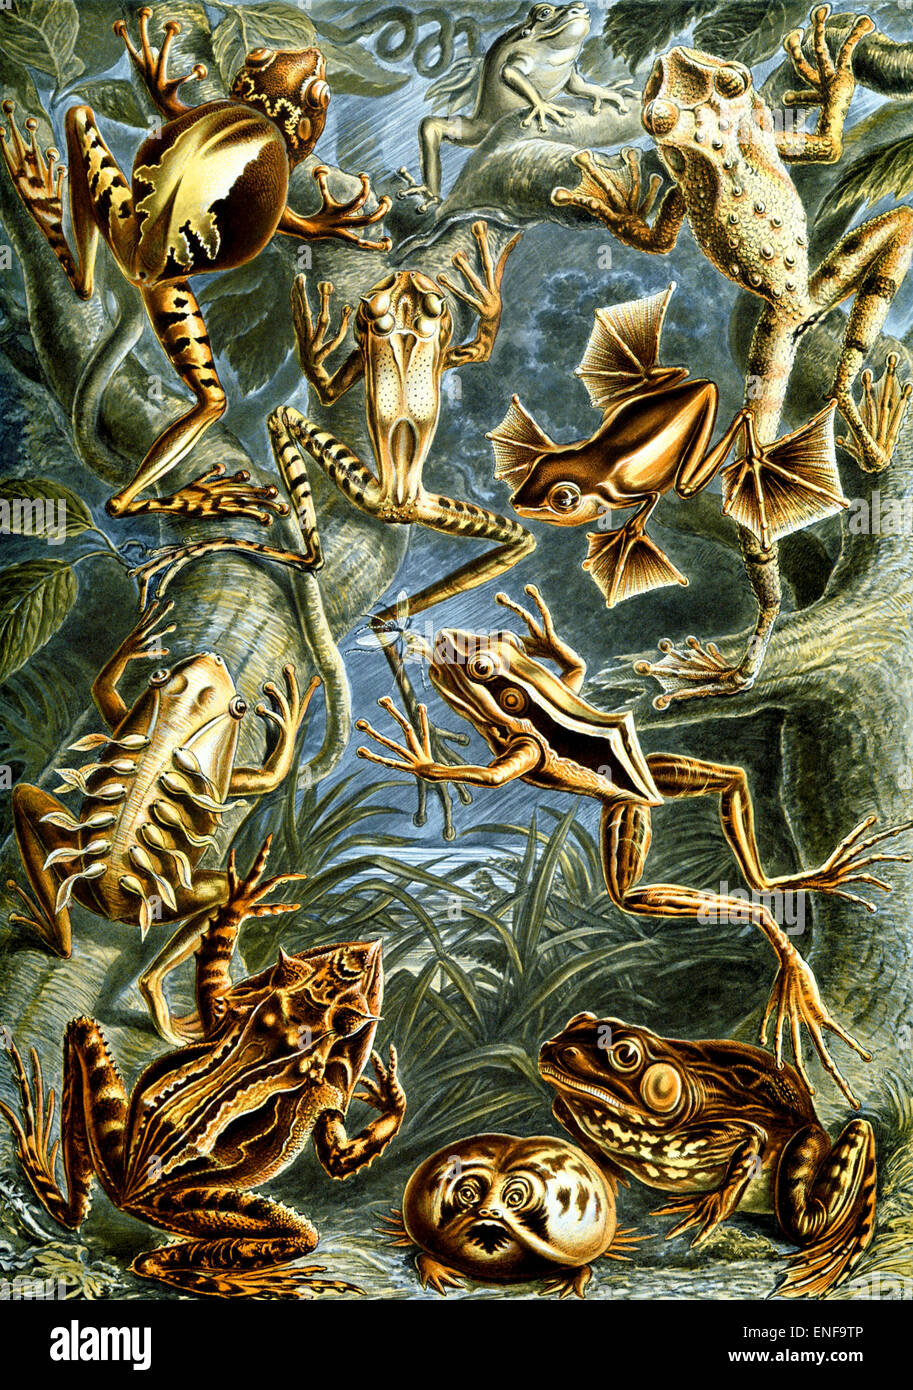 Batrachia (amphibiens), par Ernst Haeckel, 1904 - éditorial uniquement. Banque D'Images